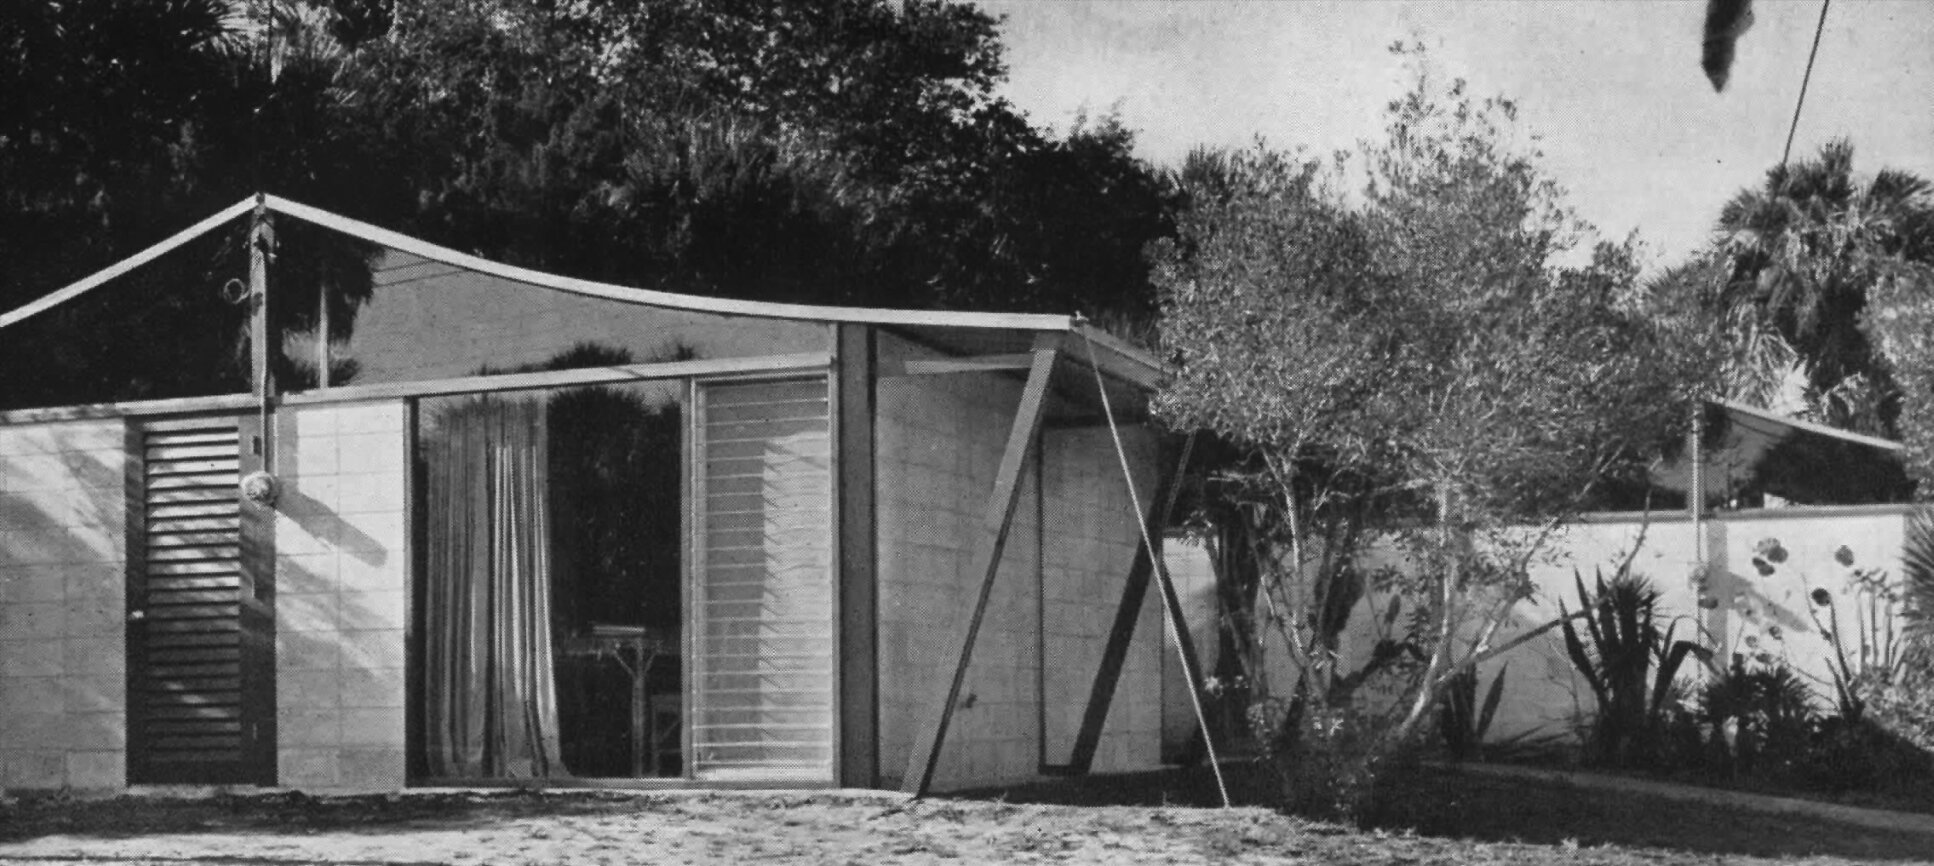 Wheelan Cottages, 1951